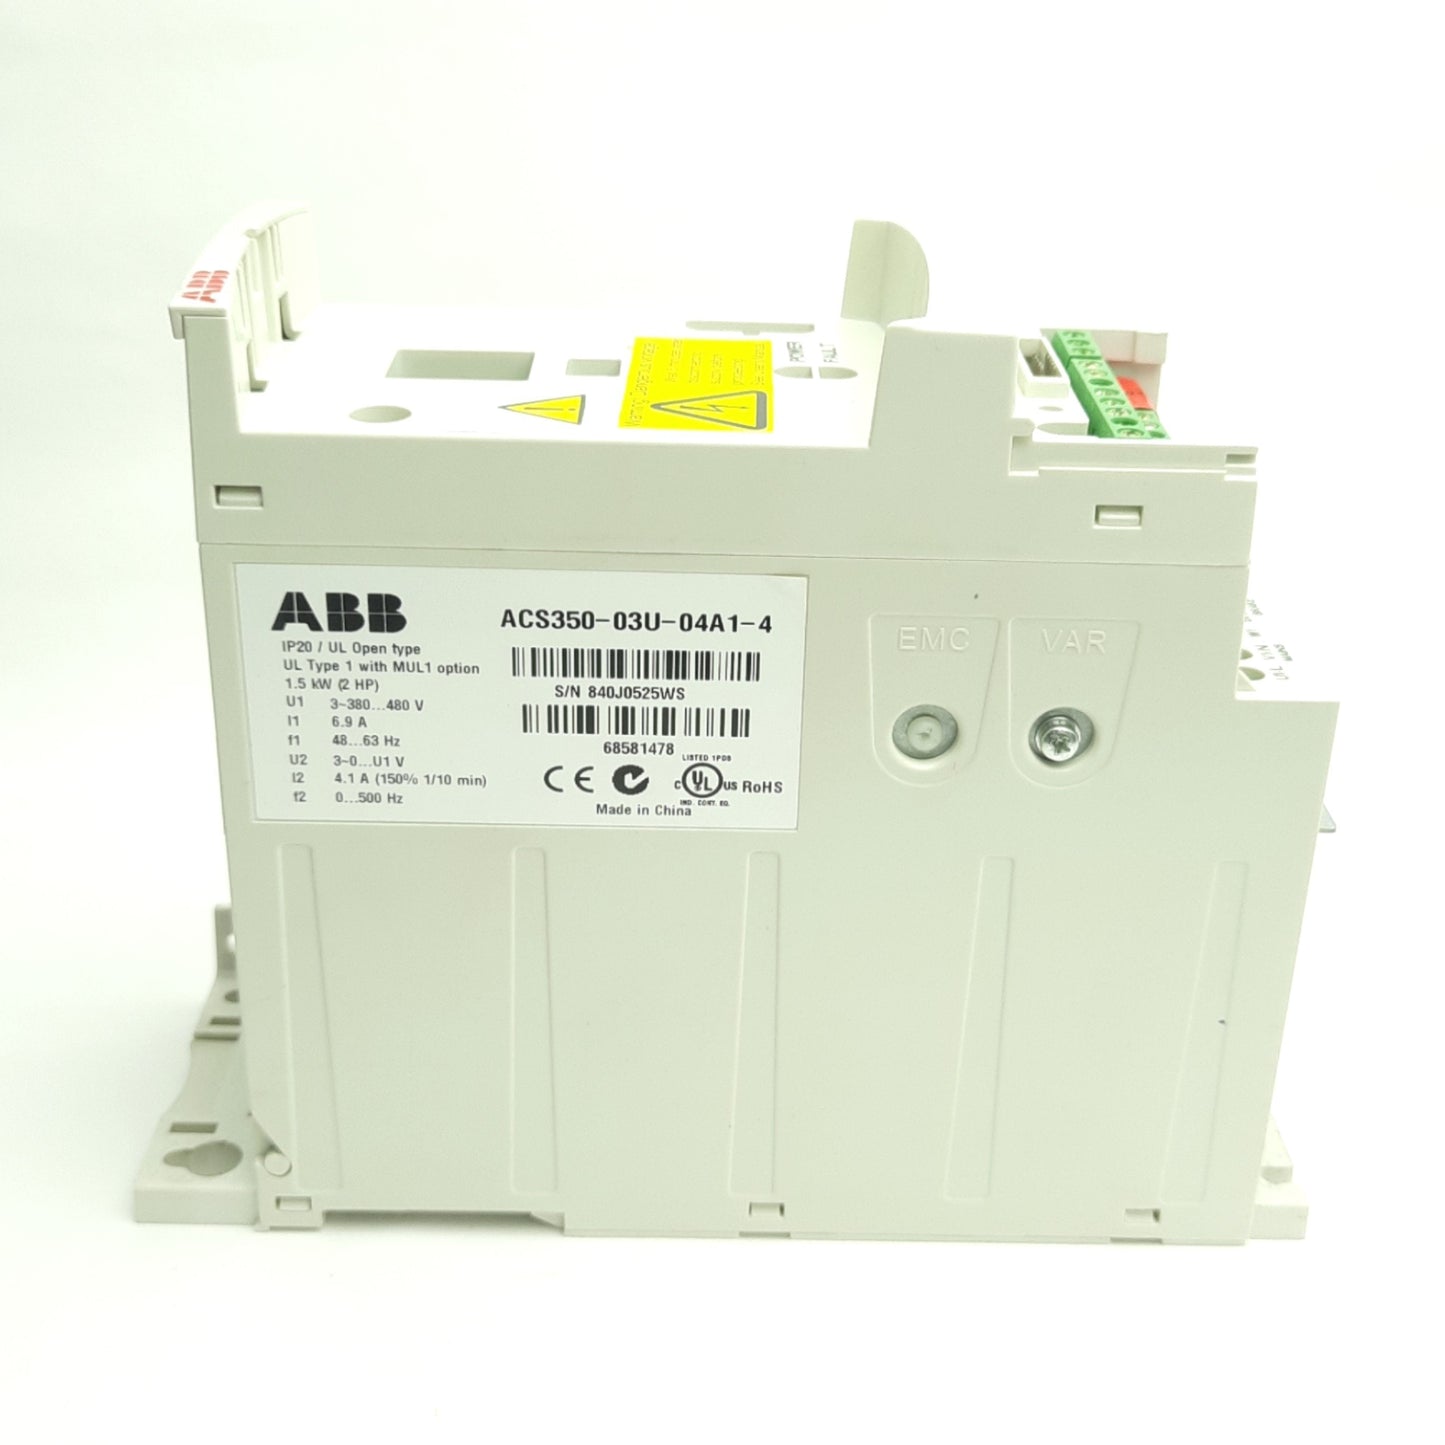 ABB ACS350-03U-04A1-4 Variable Freq AC Drive 380-480VAC 3-Ph, 3 Outputs/2 Inputs